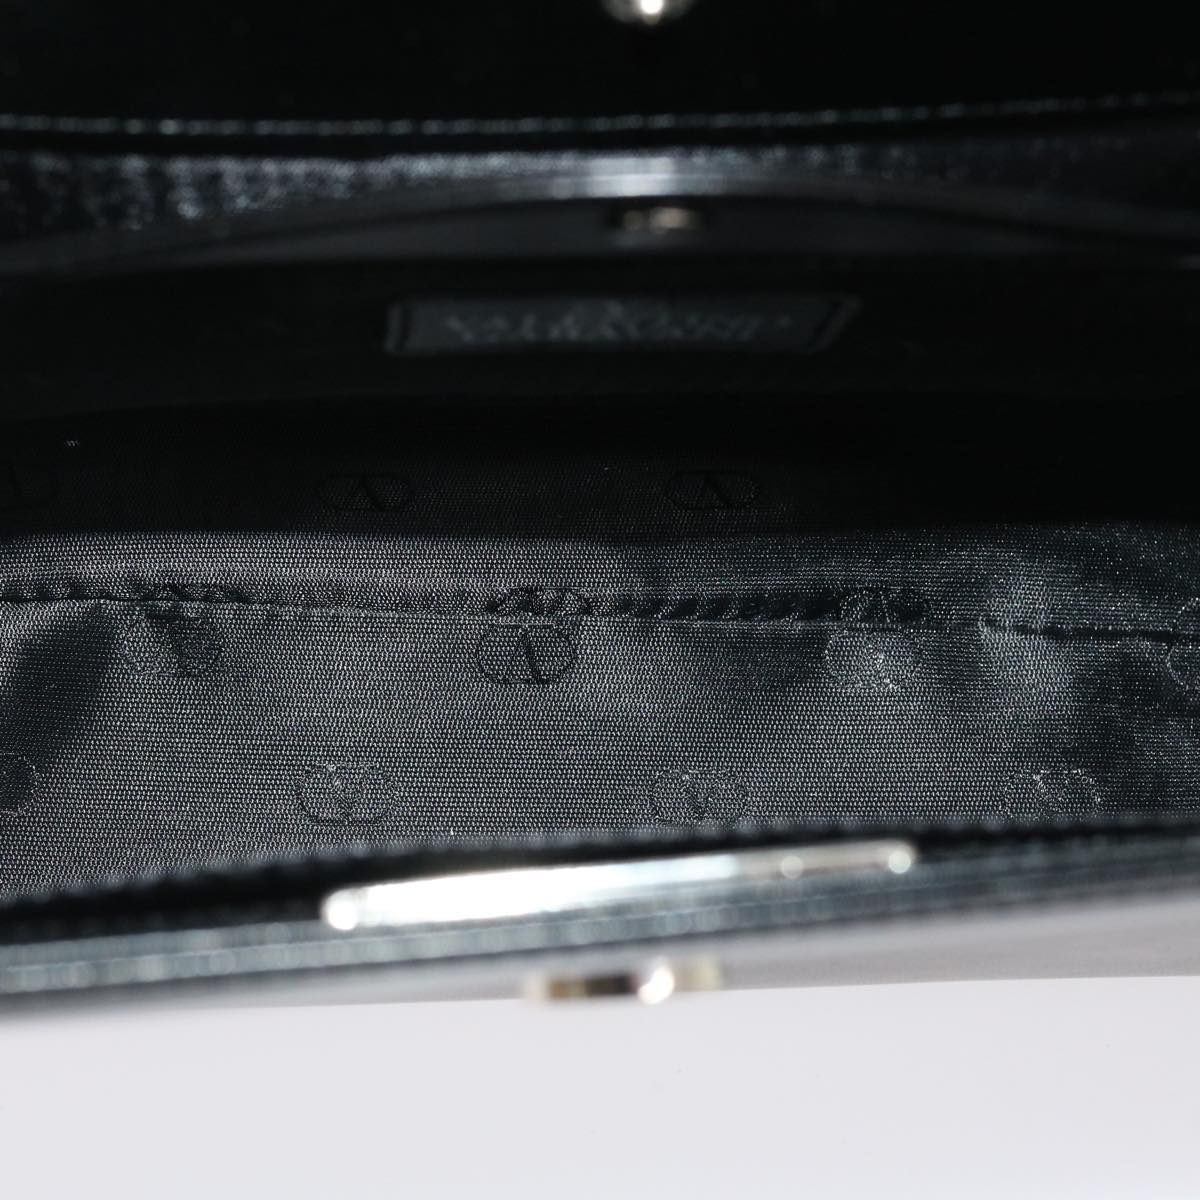 GIVENCHY Hand Bag Leather Black Auth ar7017